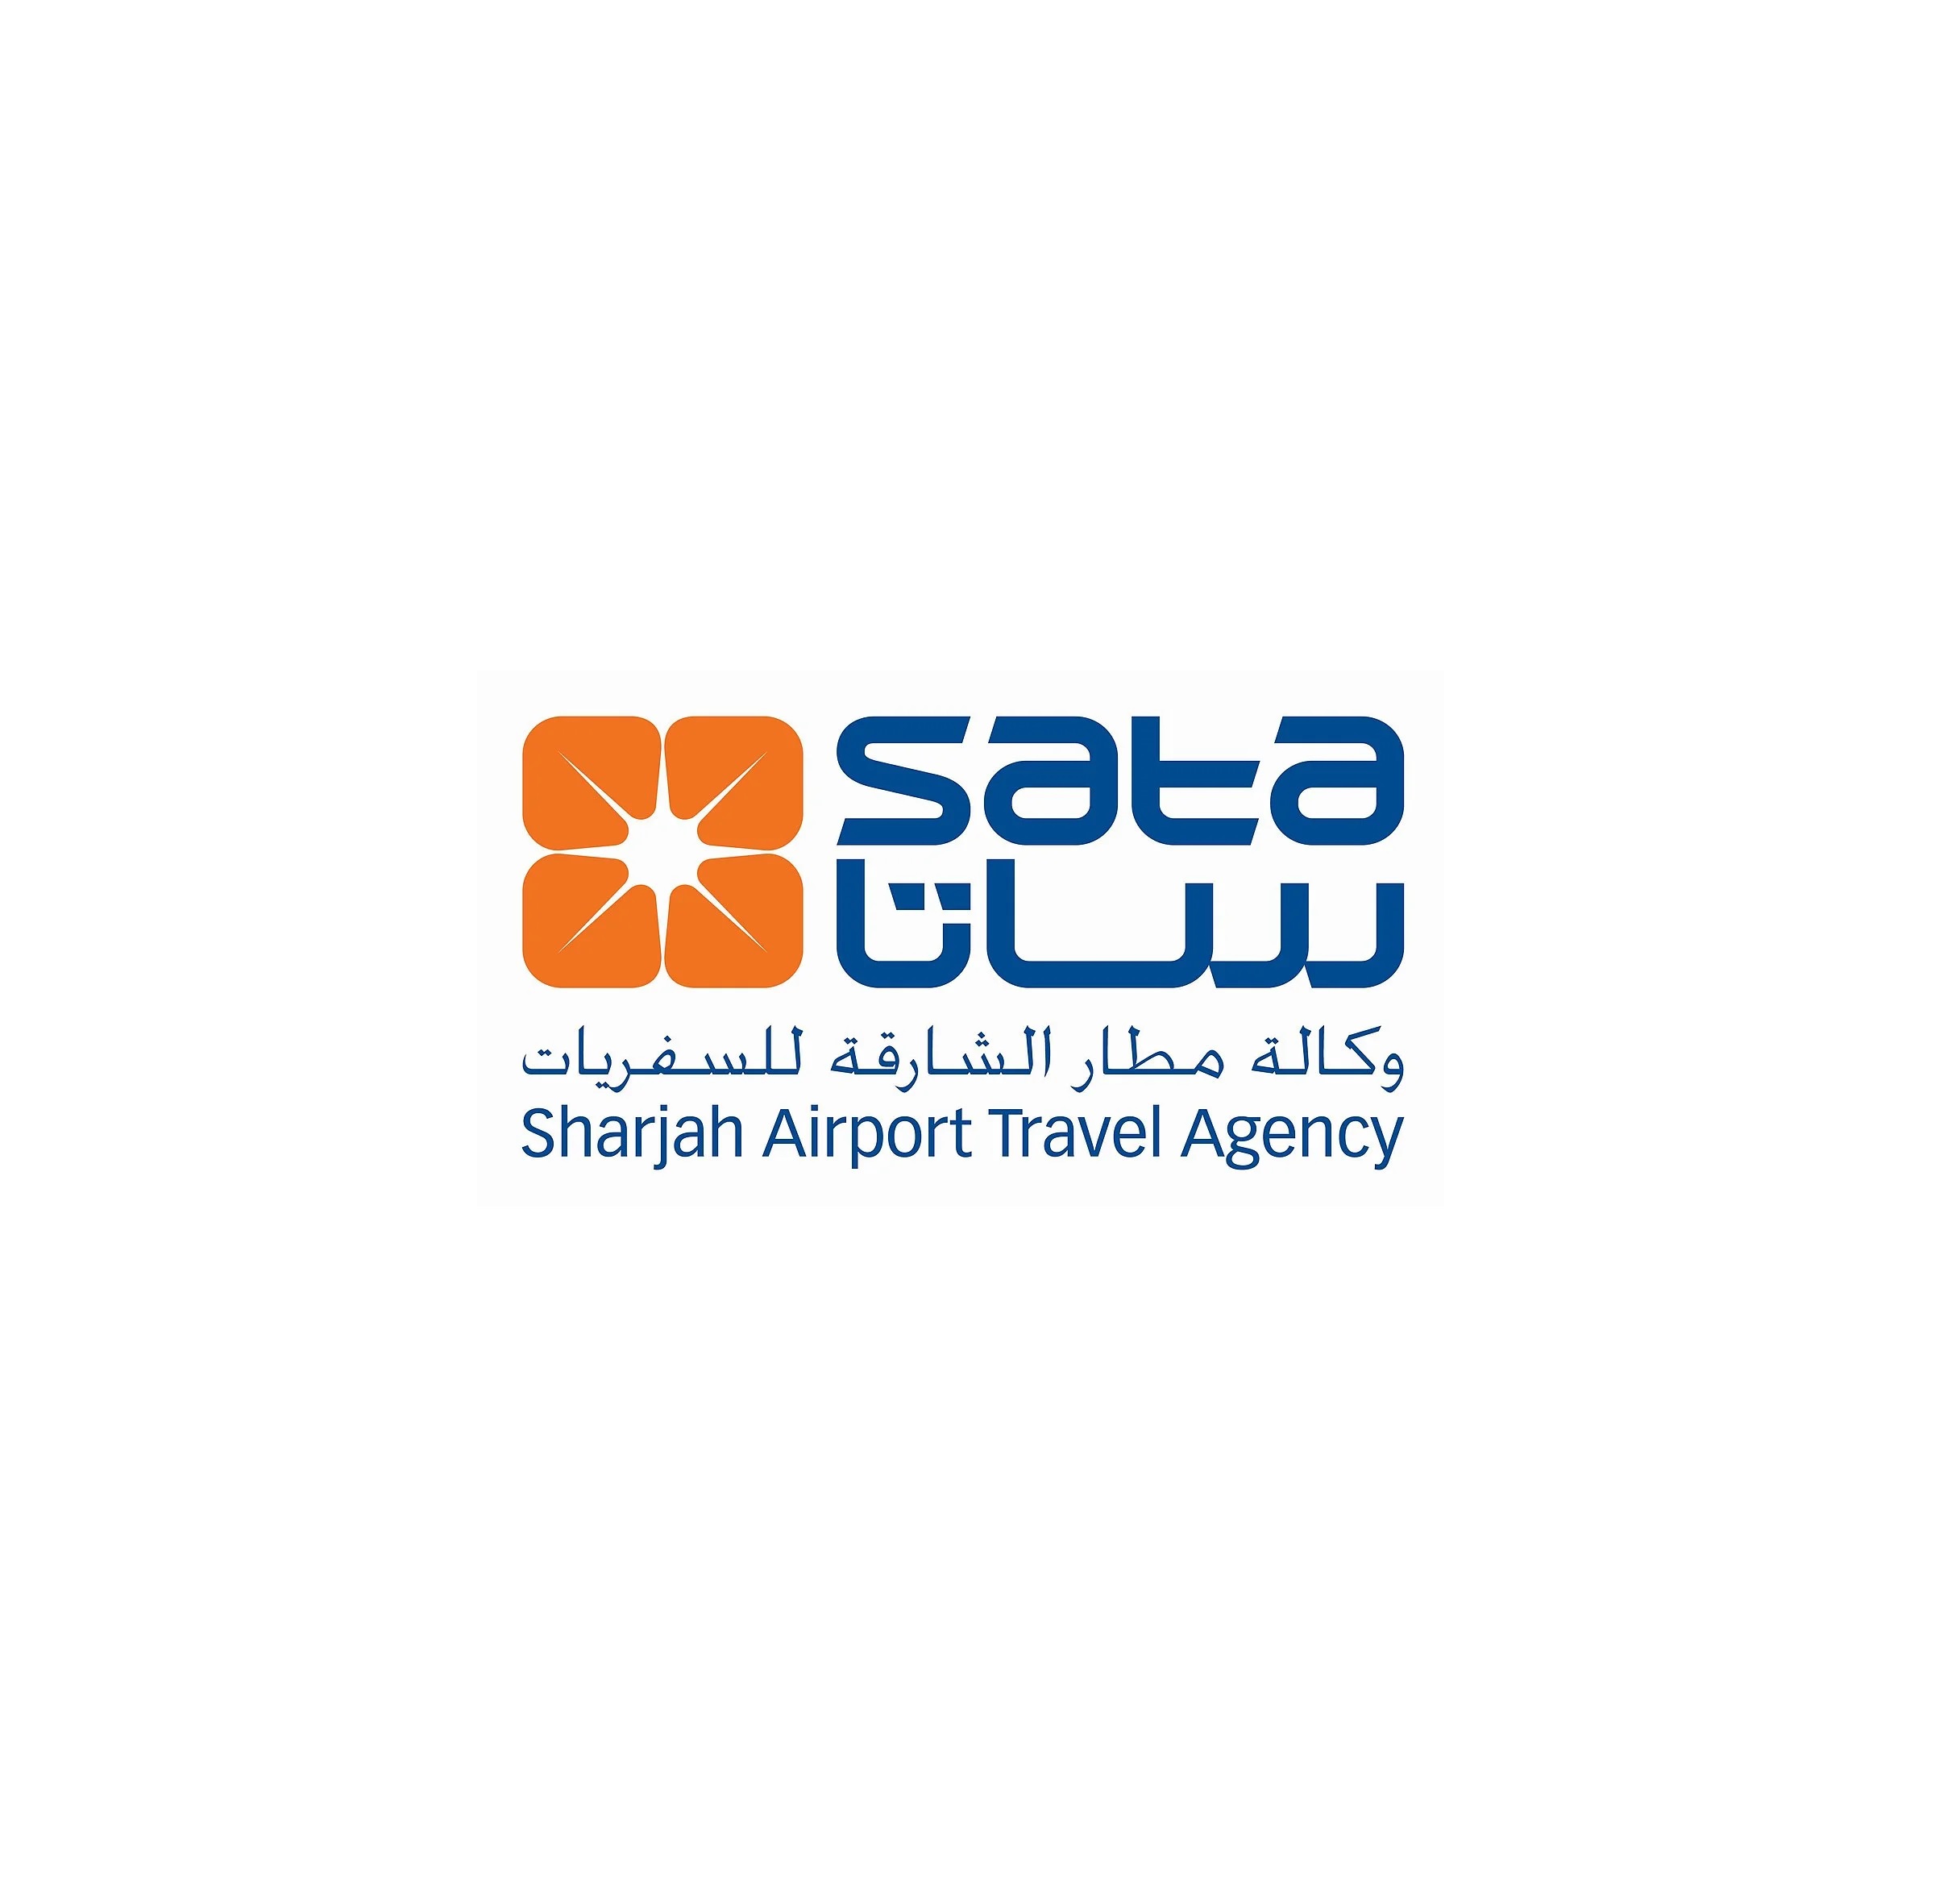 sharjah airport travel agency (sata) ajman photos